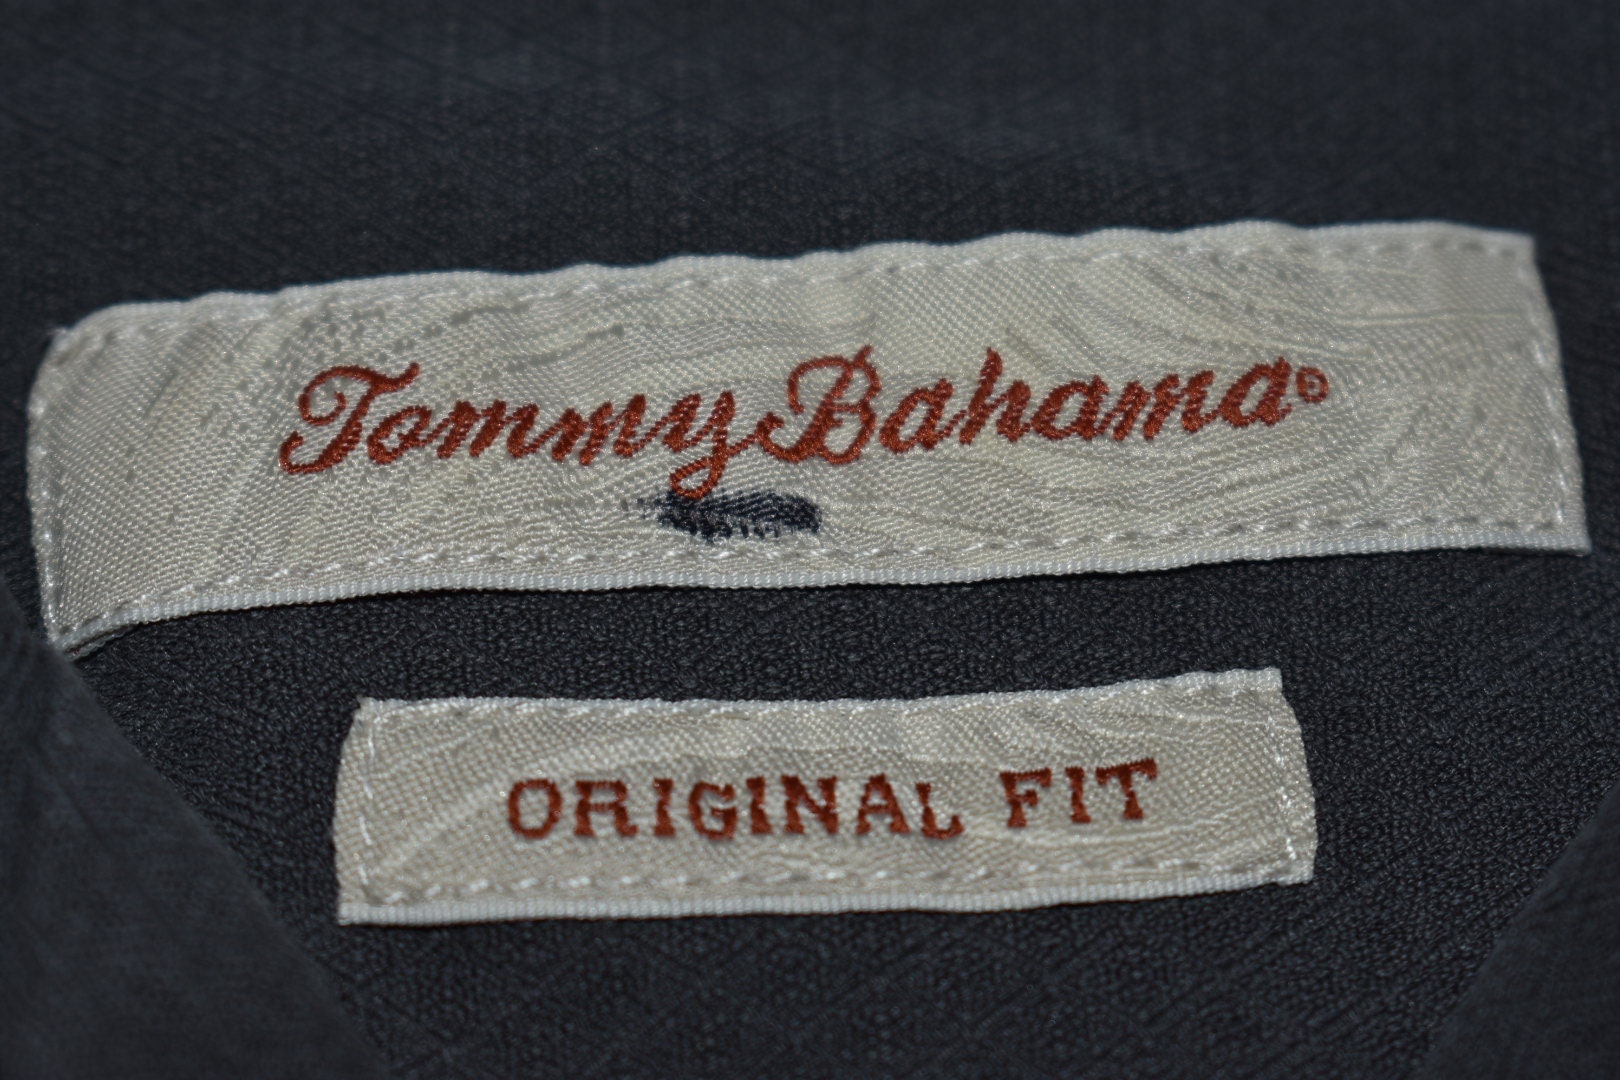 vintage tommy bahama labels